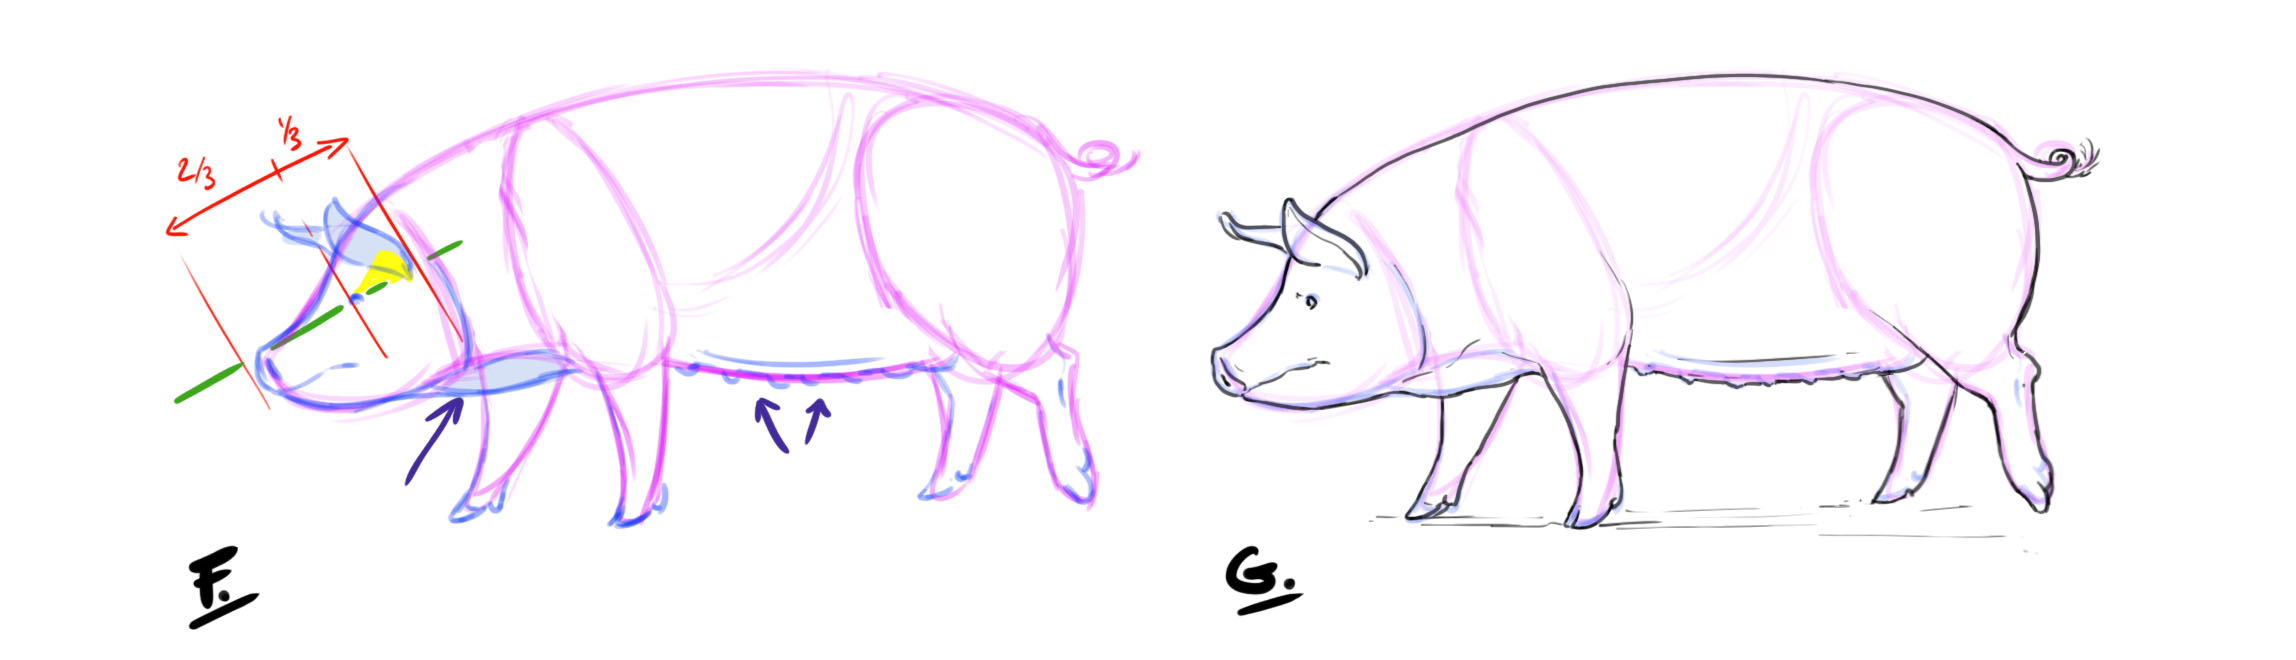 dessiner les oreilles, les yeux et les mamelles du cochon